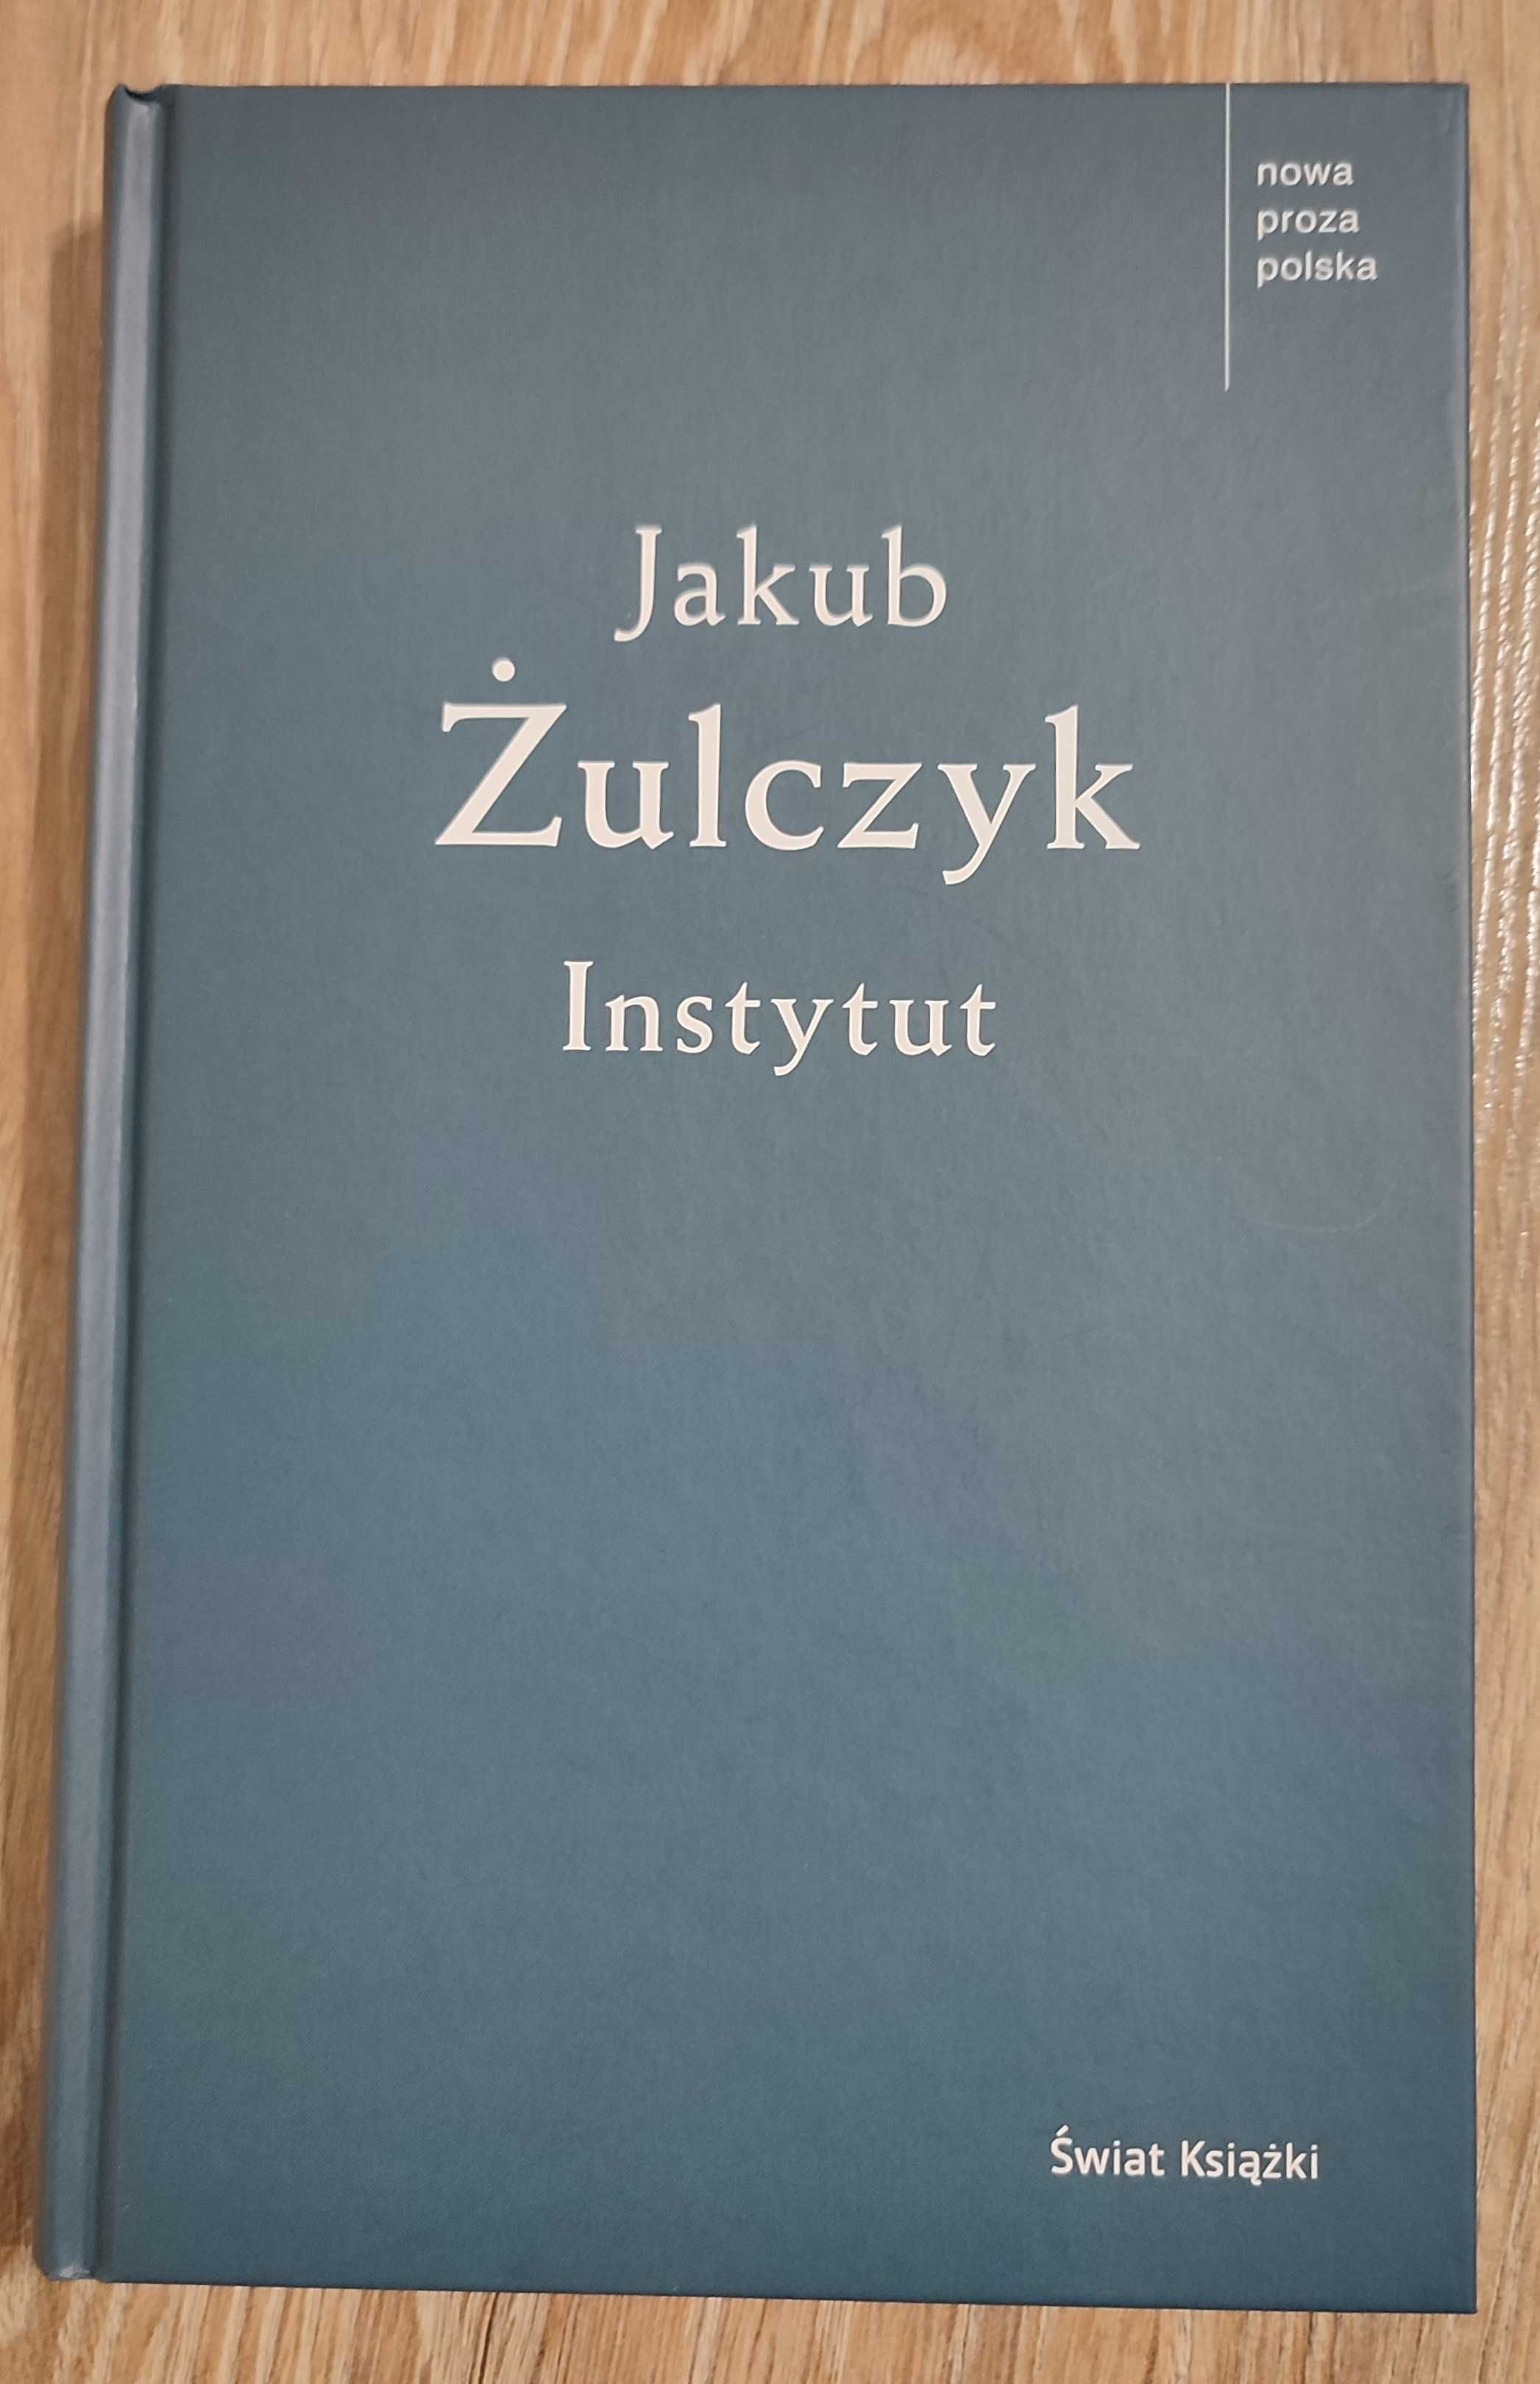 Instytut - Jakub Żulczyk wydanie II kryminał książka